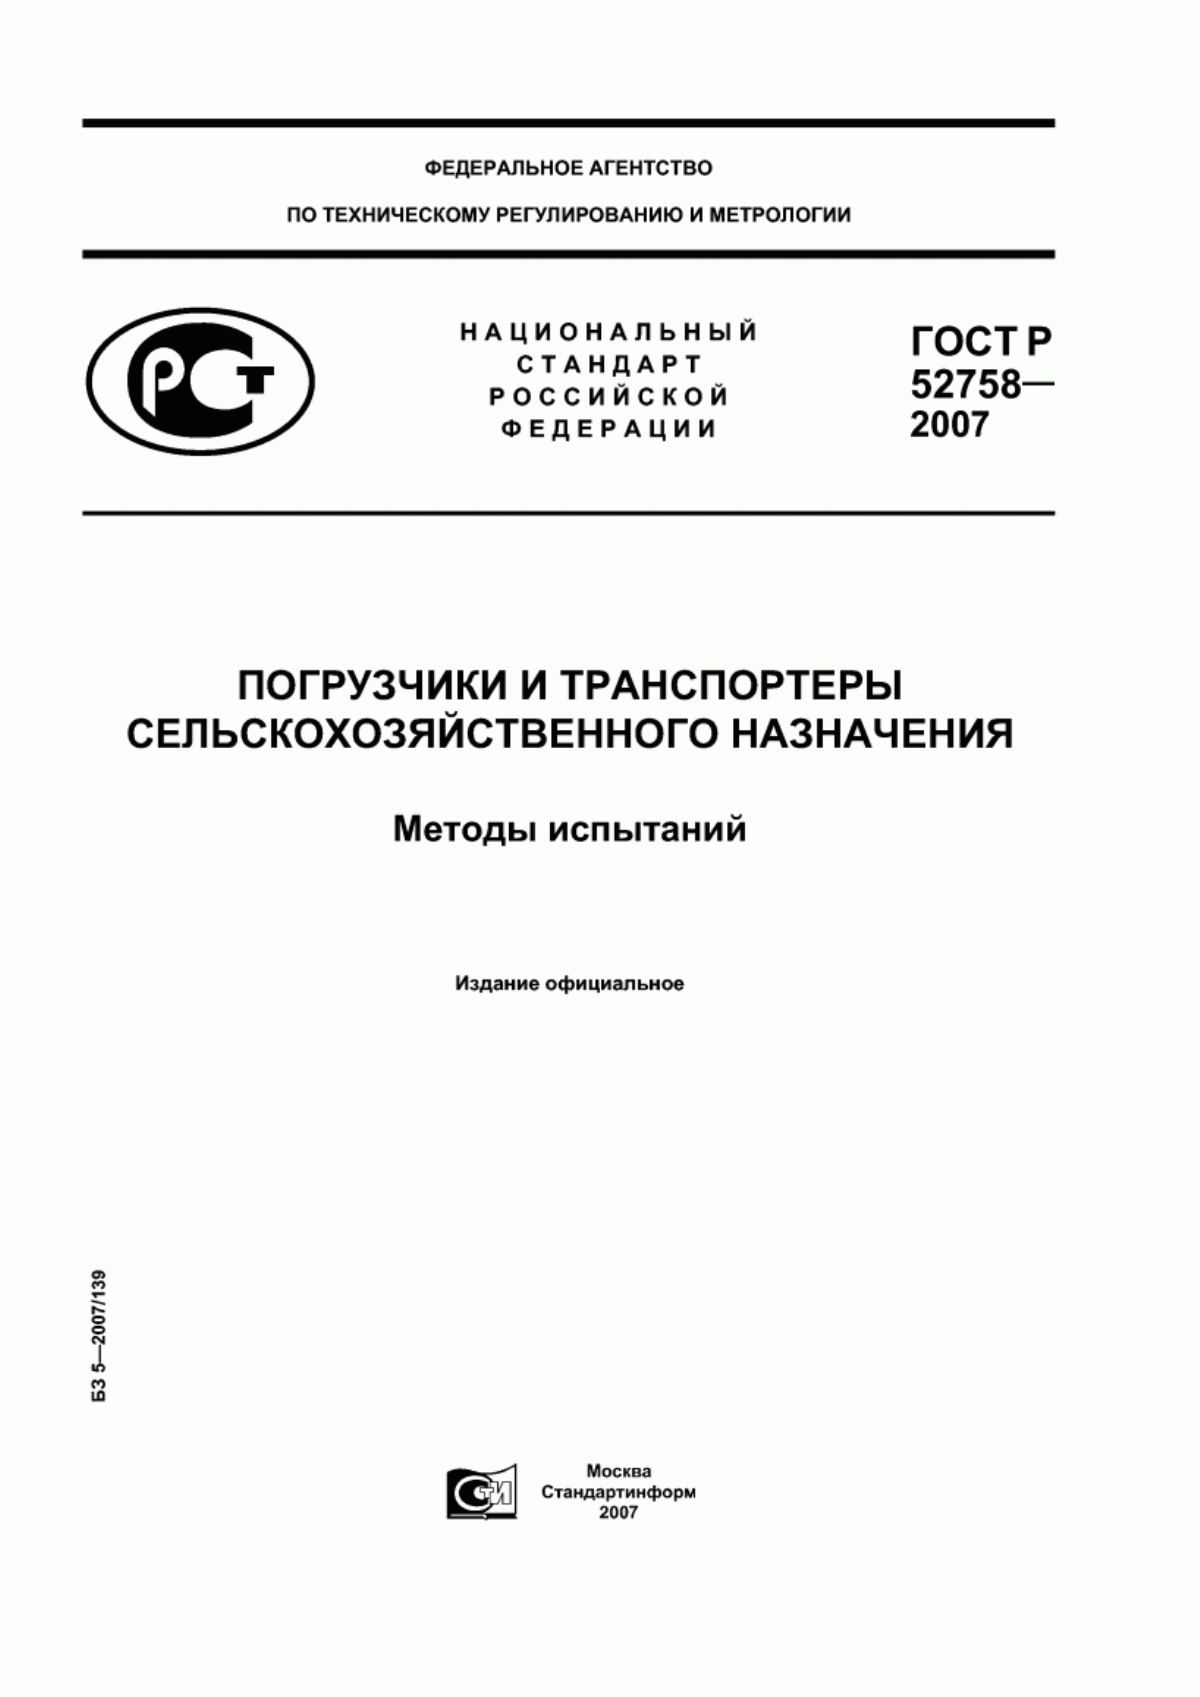 ГОСТ Р 52758-2007 Погрузчики и транспортеры сельскохозяйственного назначения. Методы испытаний